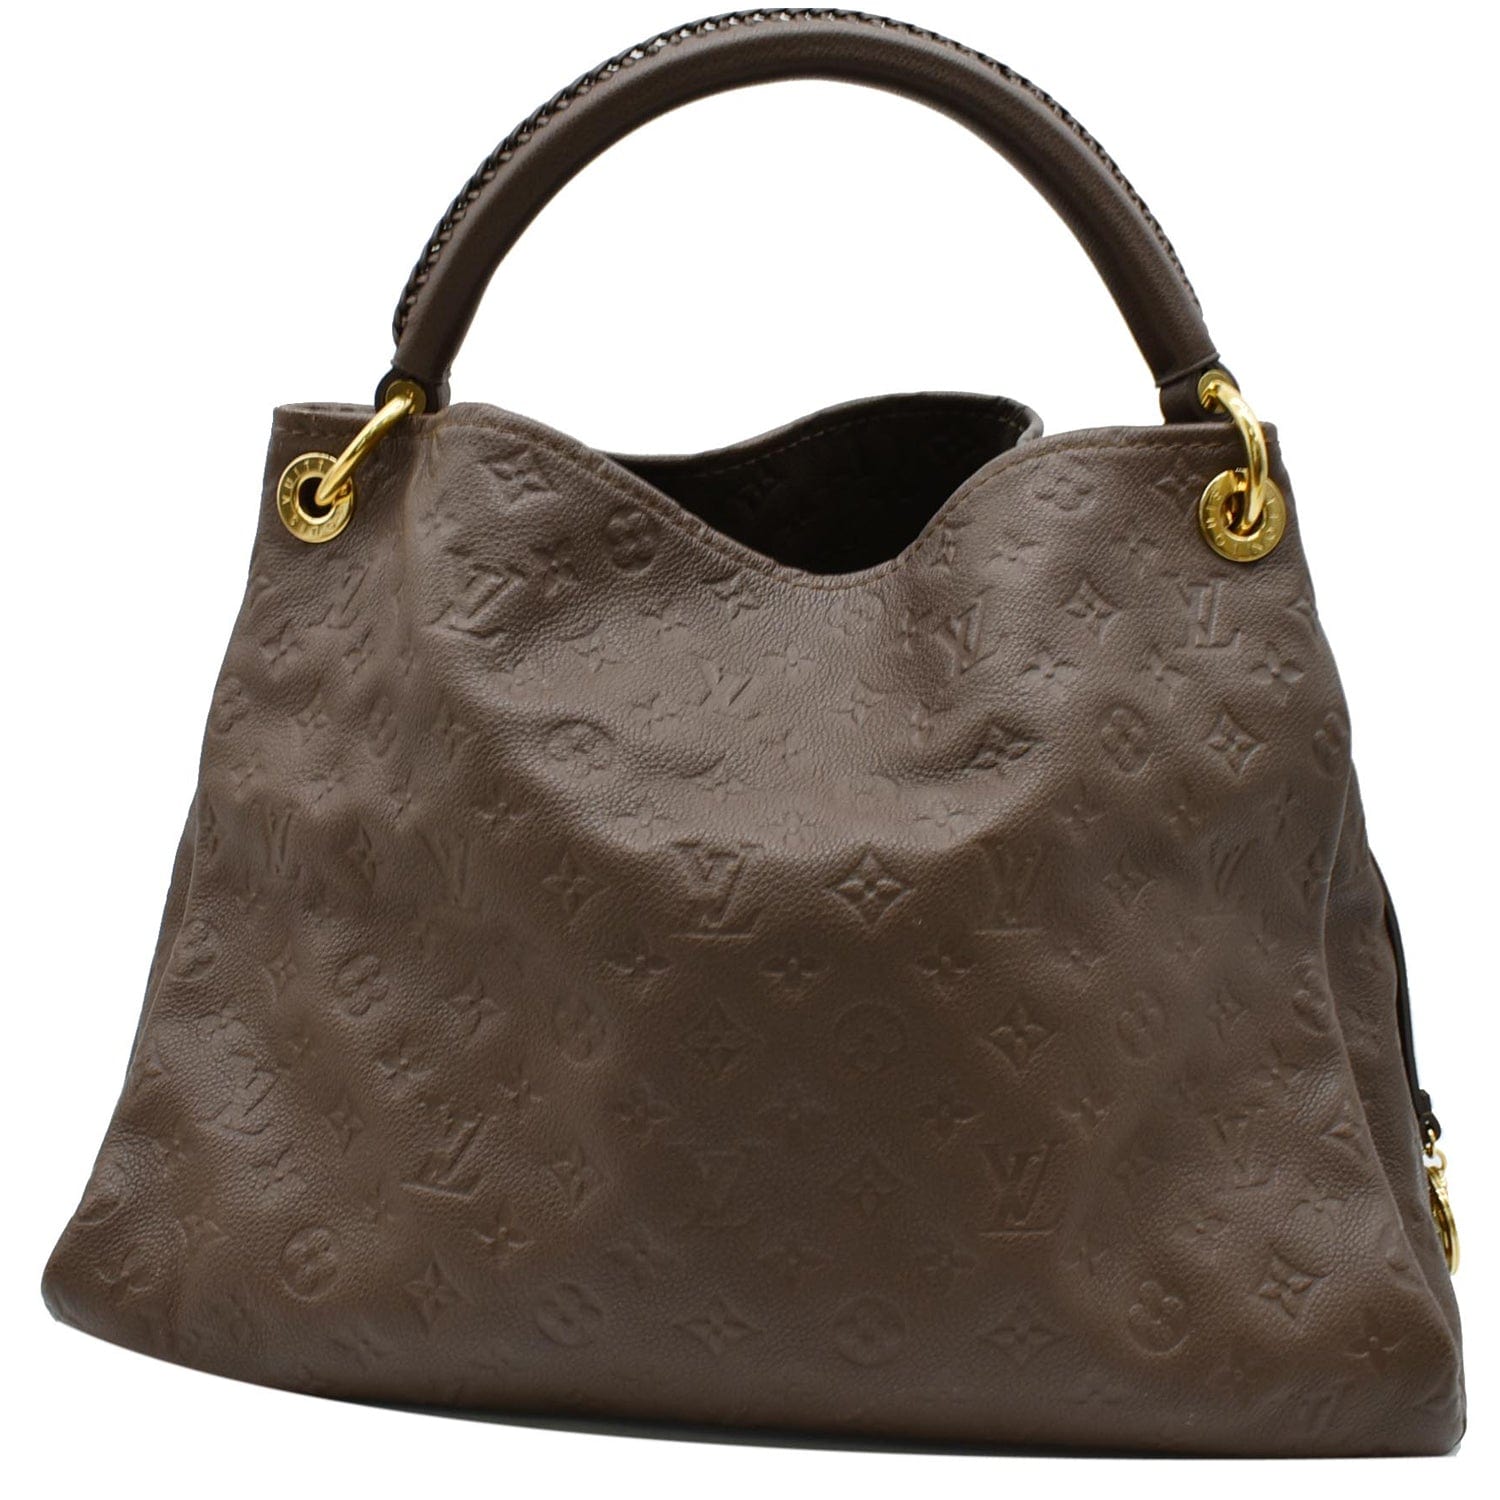 Authentic Louis Vuitton Artsy MM Ombré Brown Empreinte Leather